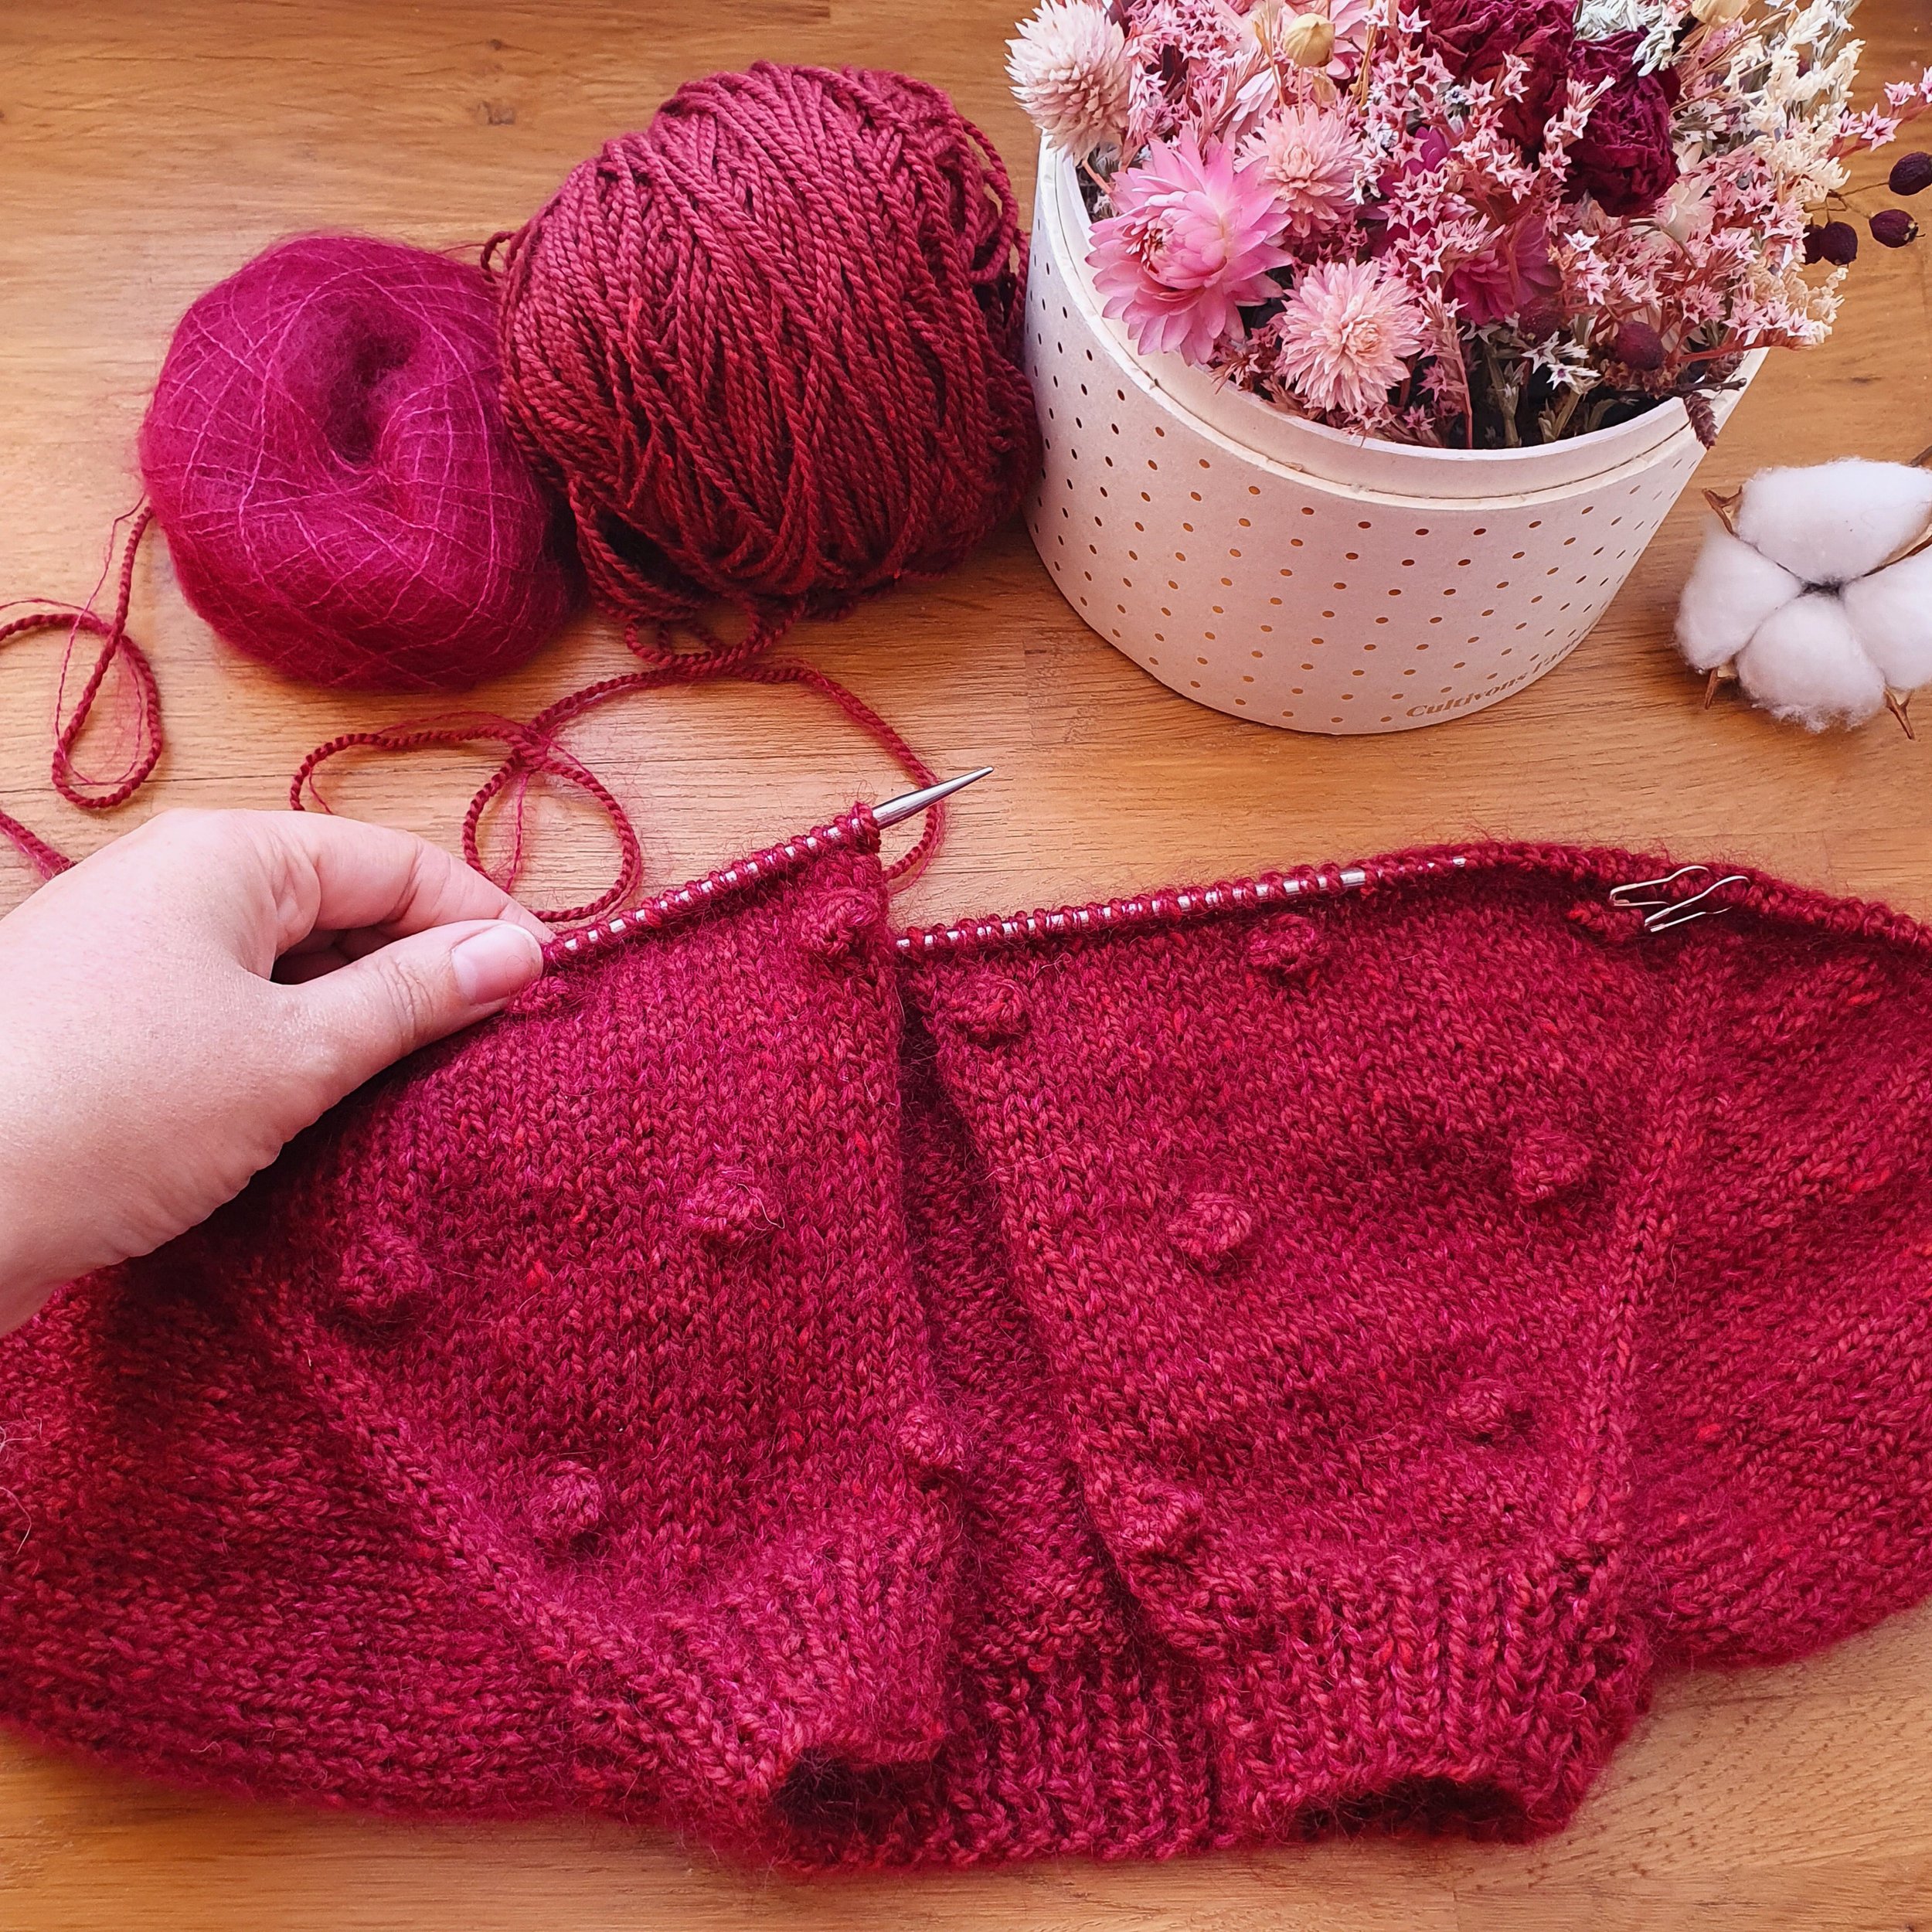 Dans la série Apprendre à tricoter : Quelles mesures pour faire